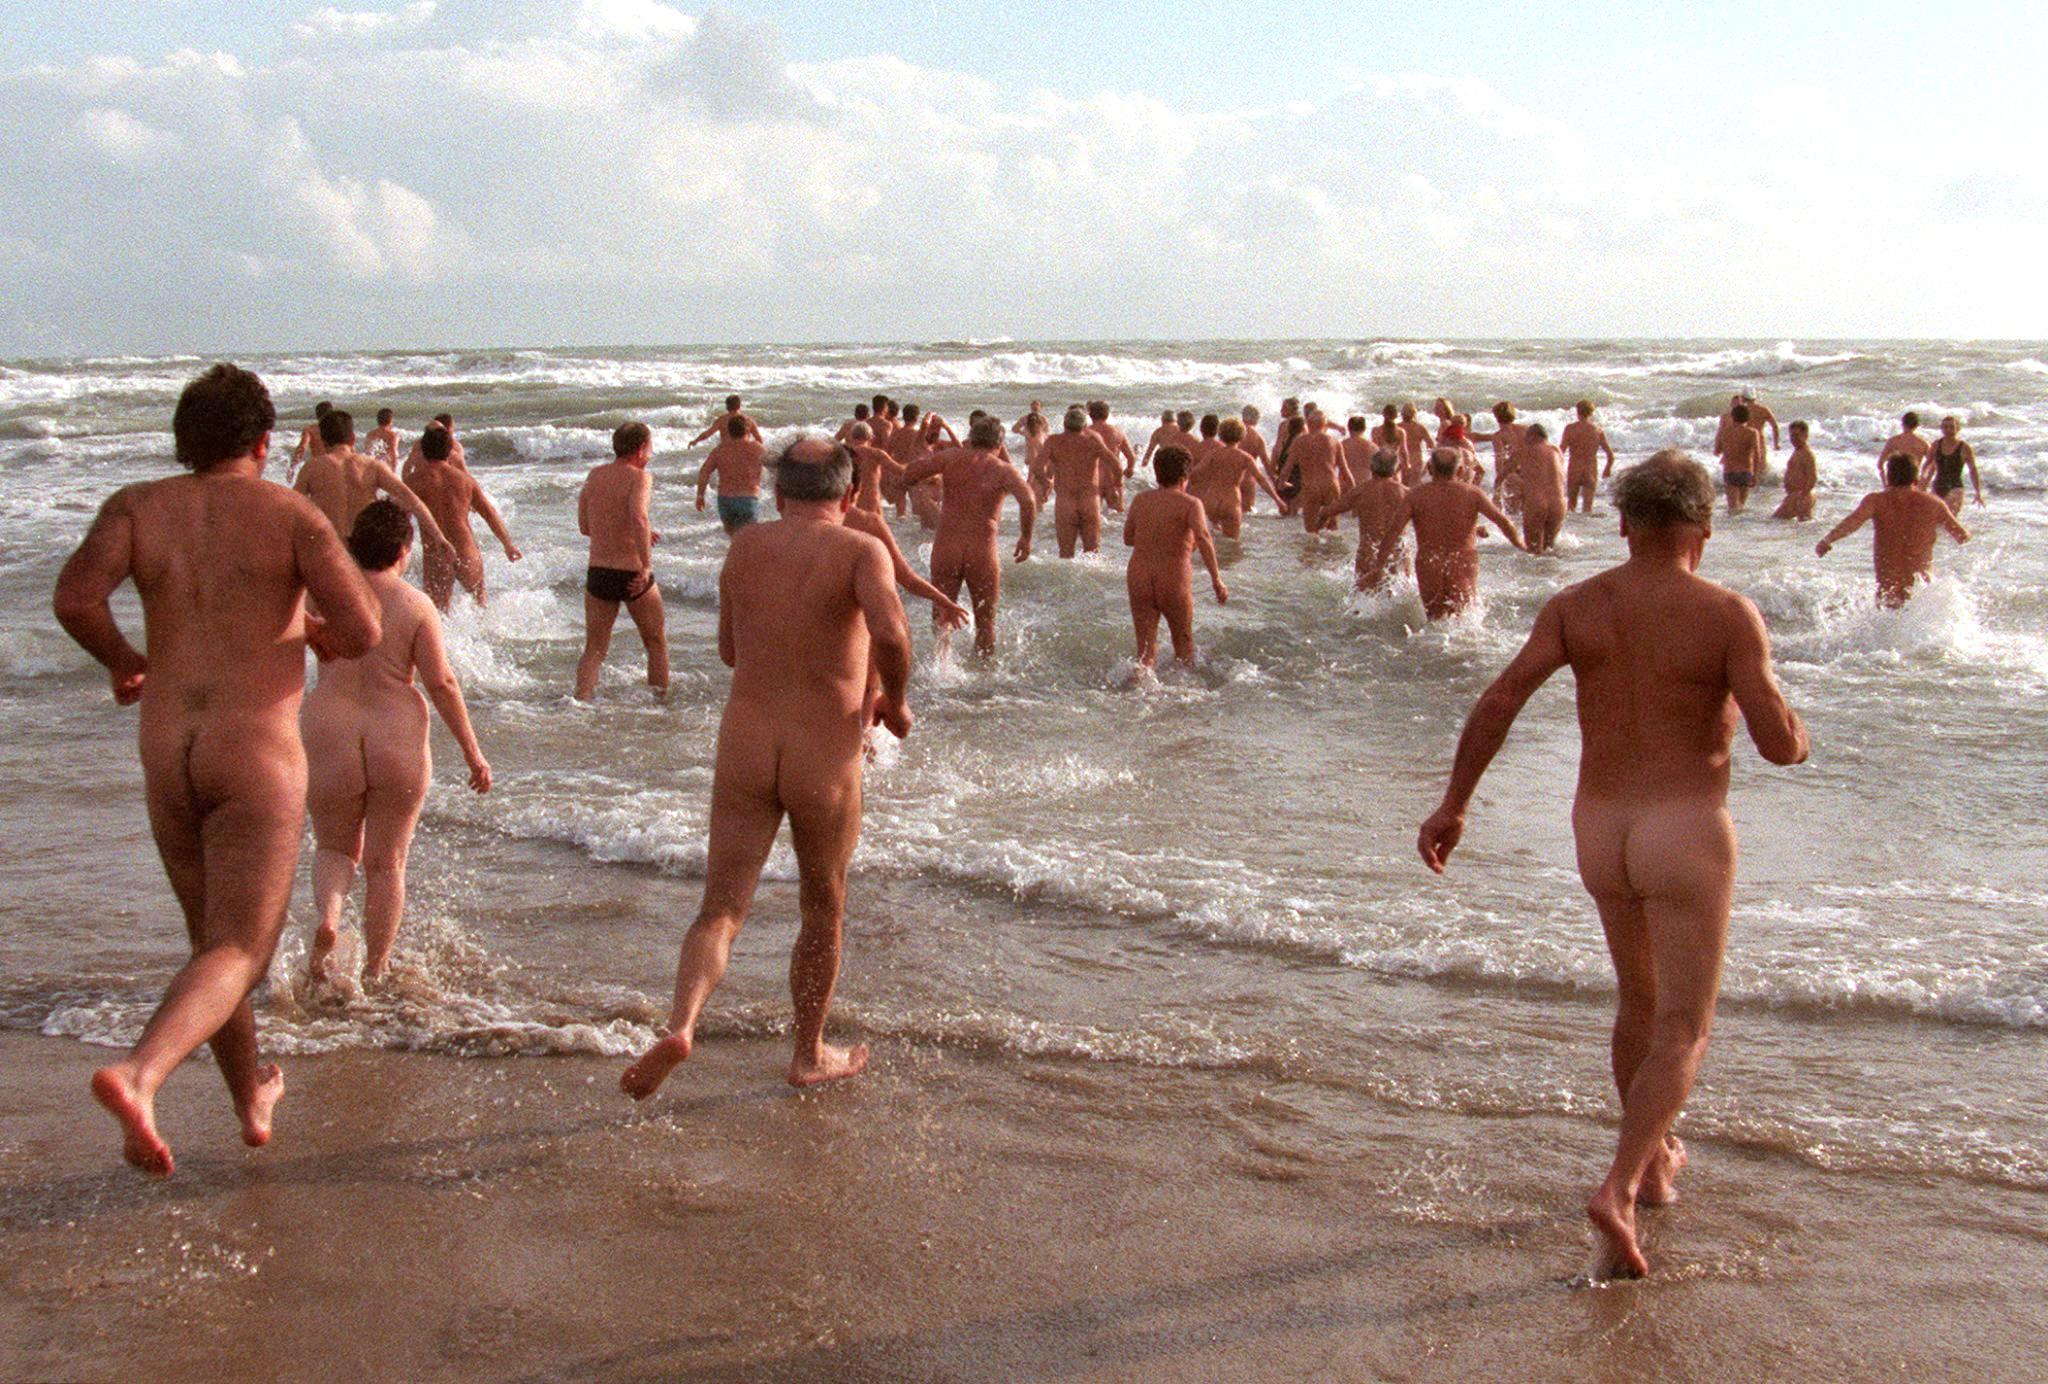 Nudisti: spiagge in Liguria per chi pratica il nudismo